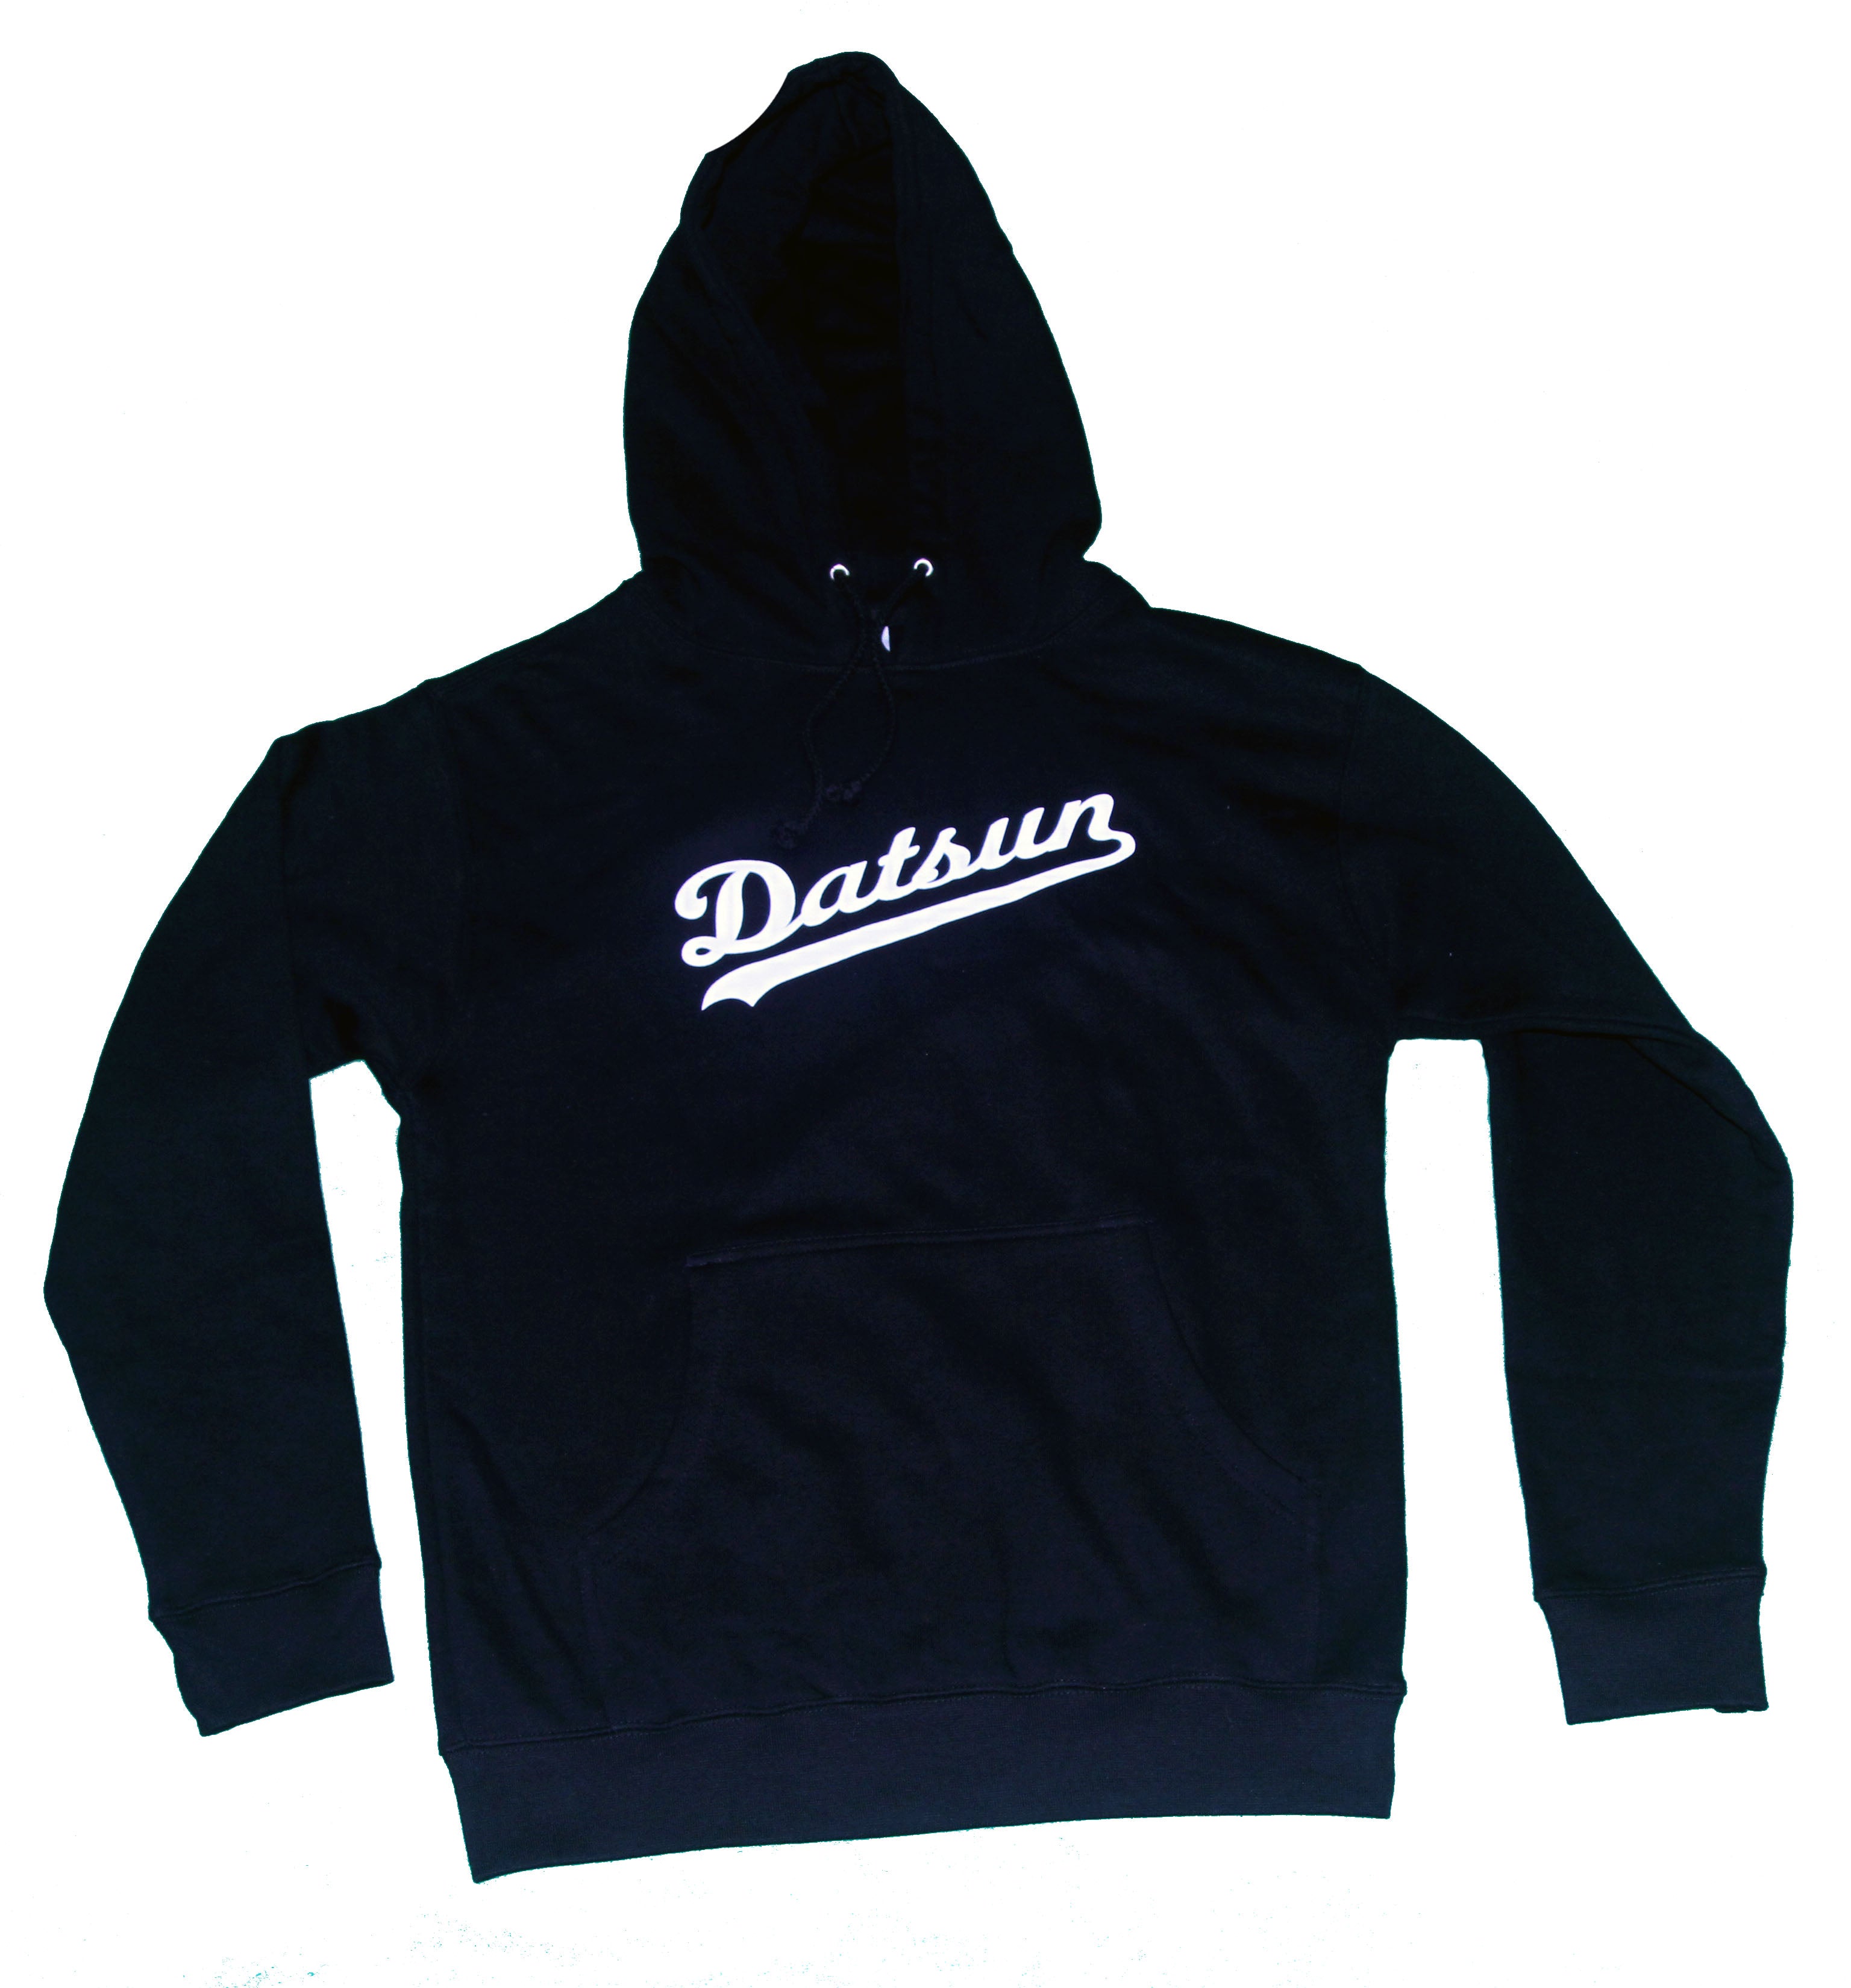 DG "Datsun" Black Hoodie